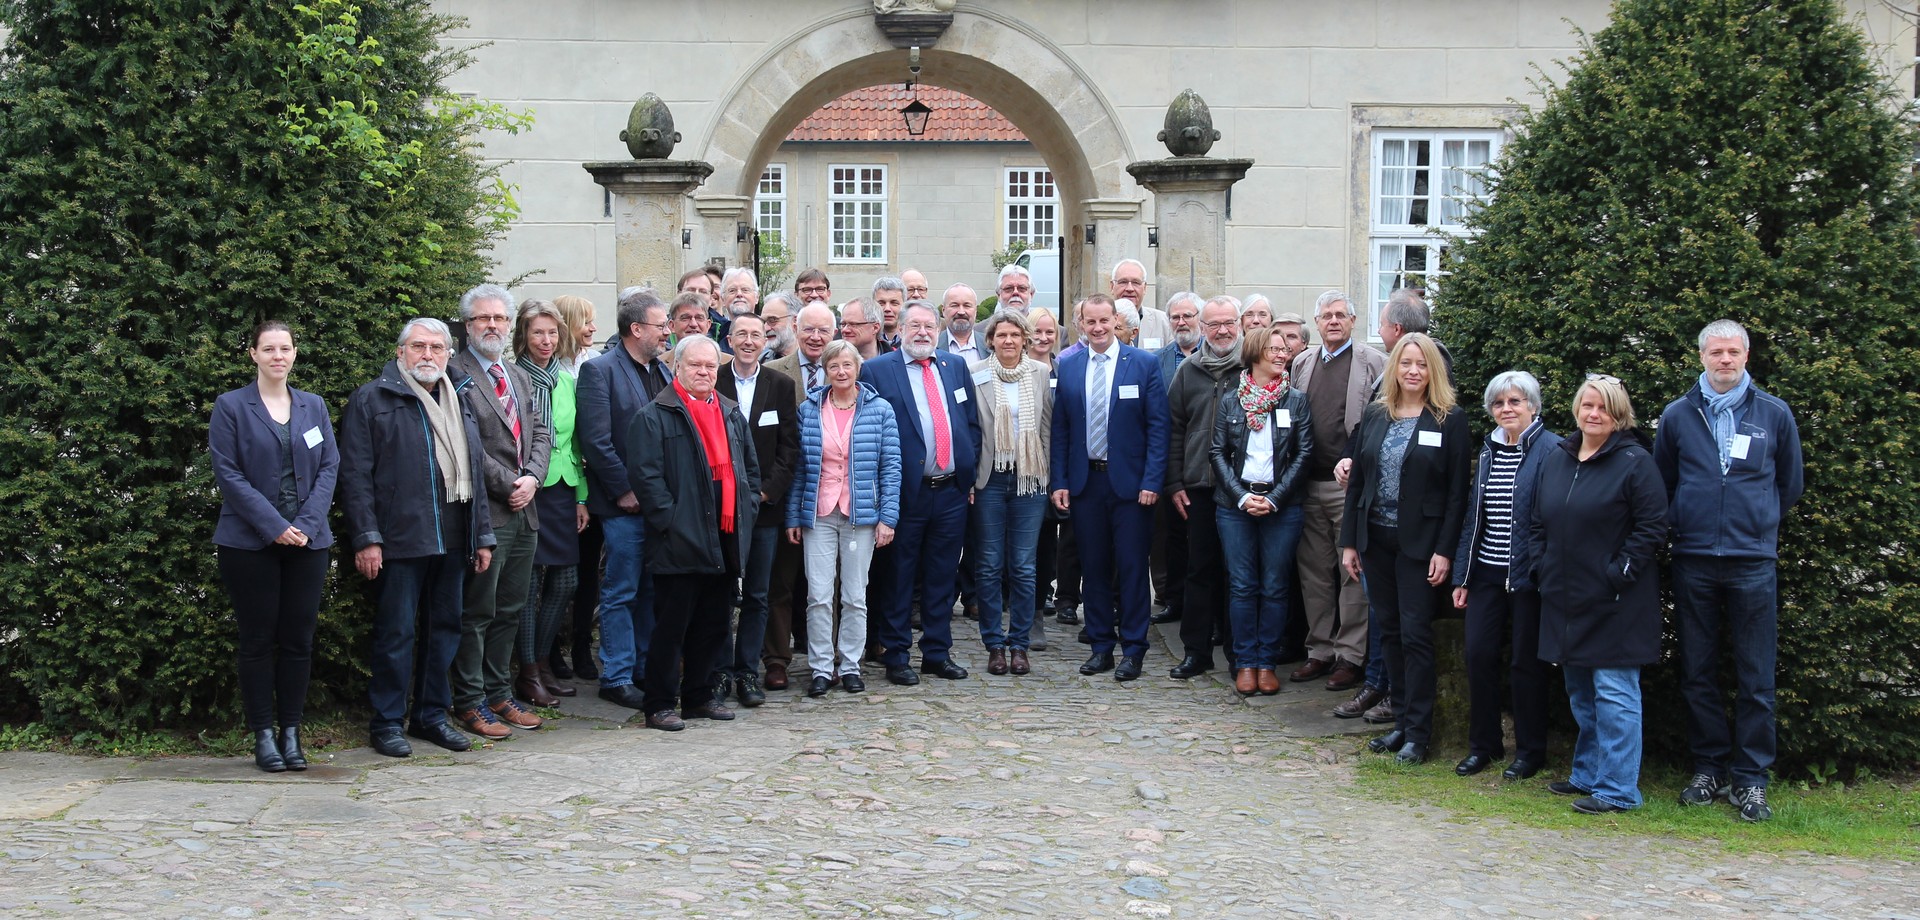 Gruppenfoto der Jahreshauptversammlung 2017 in Tecklenburg (Foto: Altertumskommission).